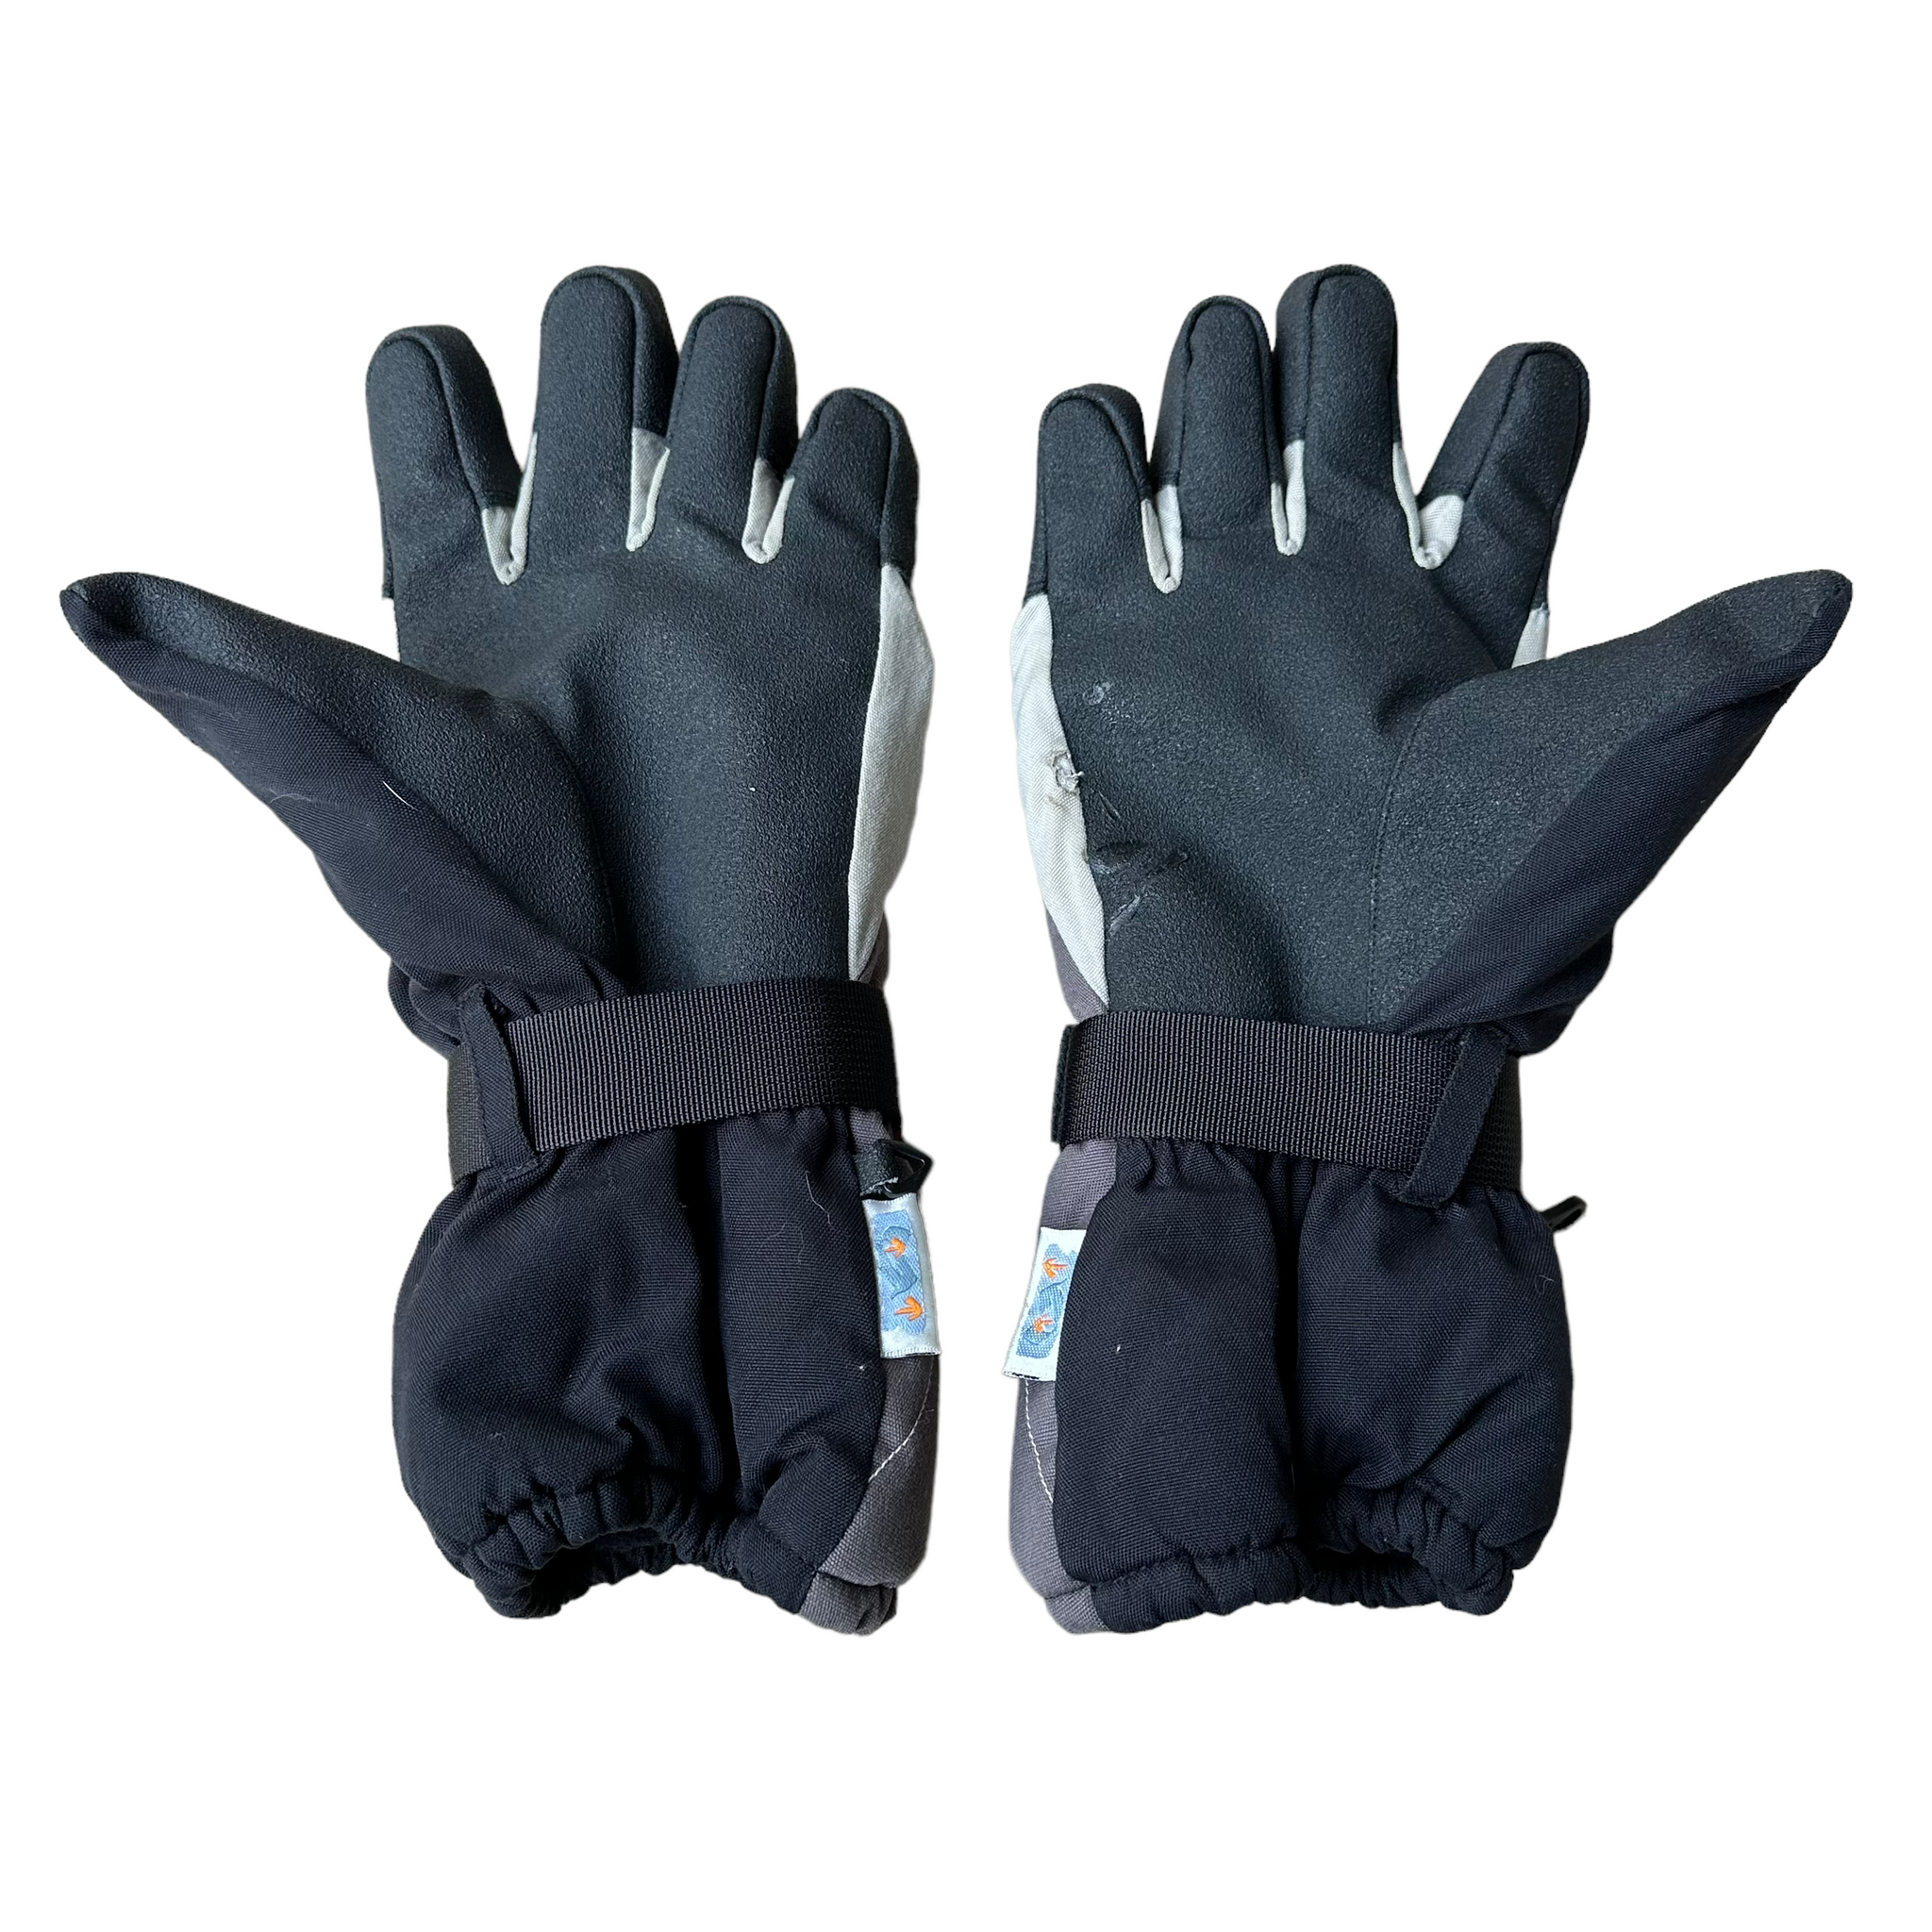 Salomon gloves XL